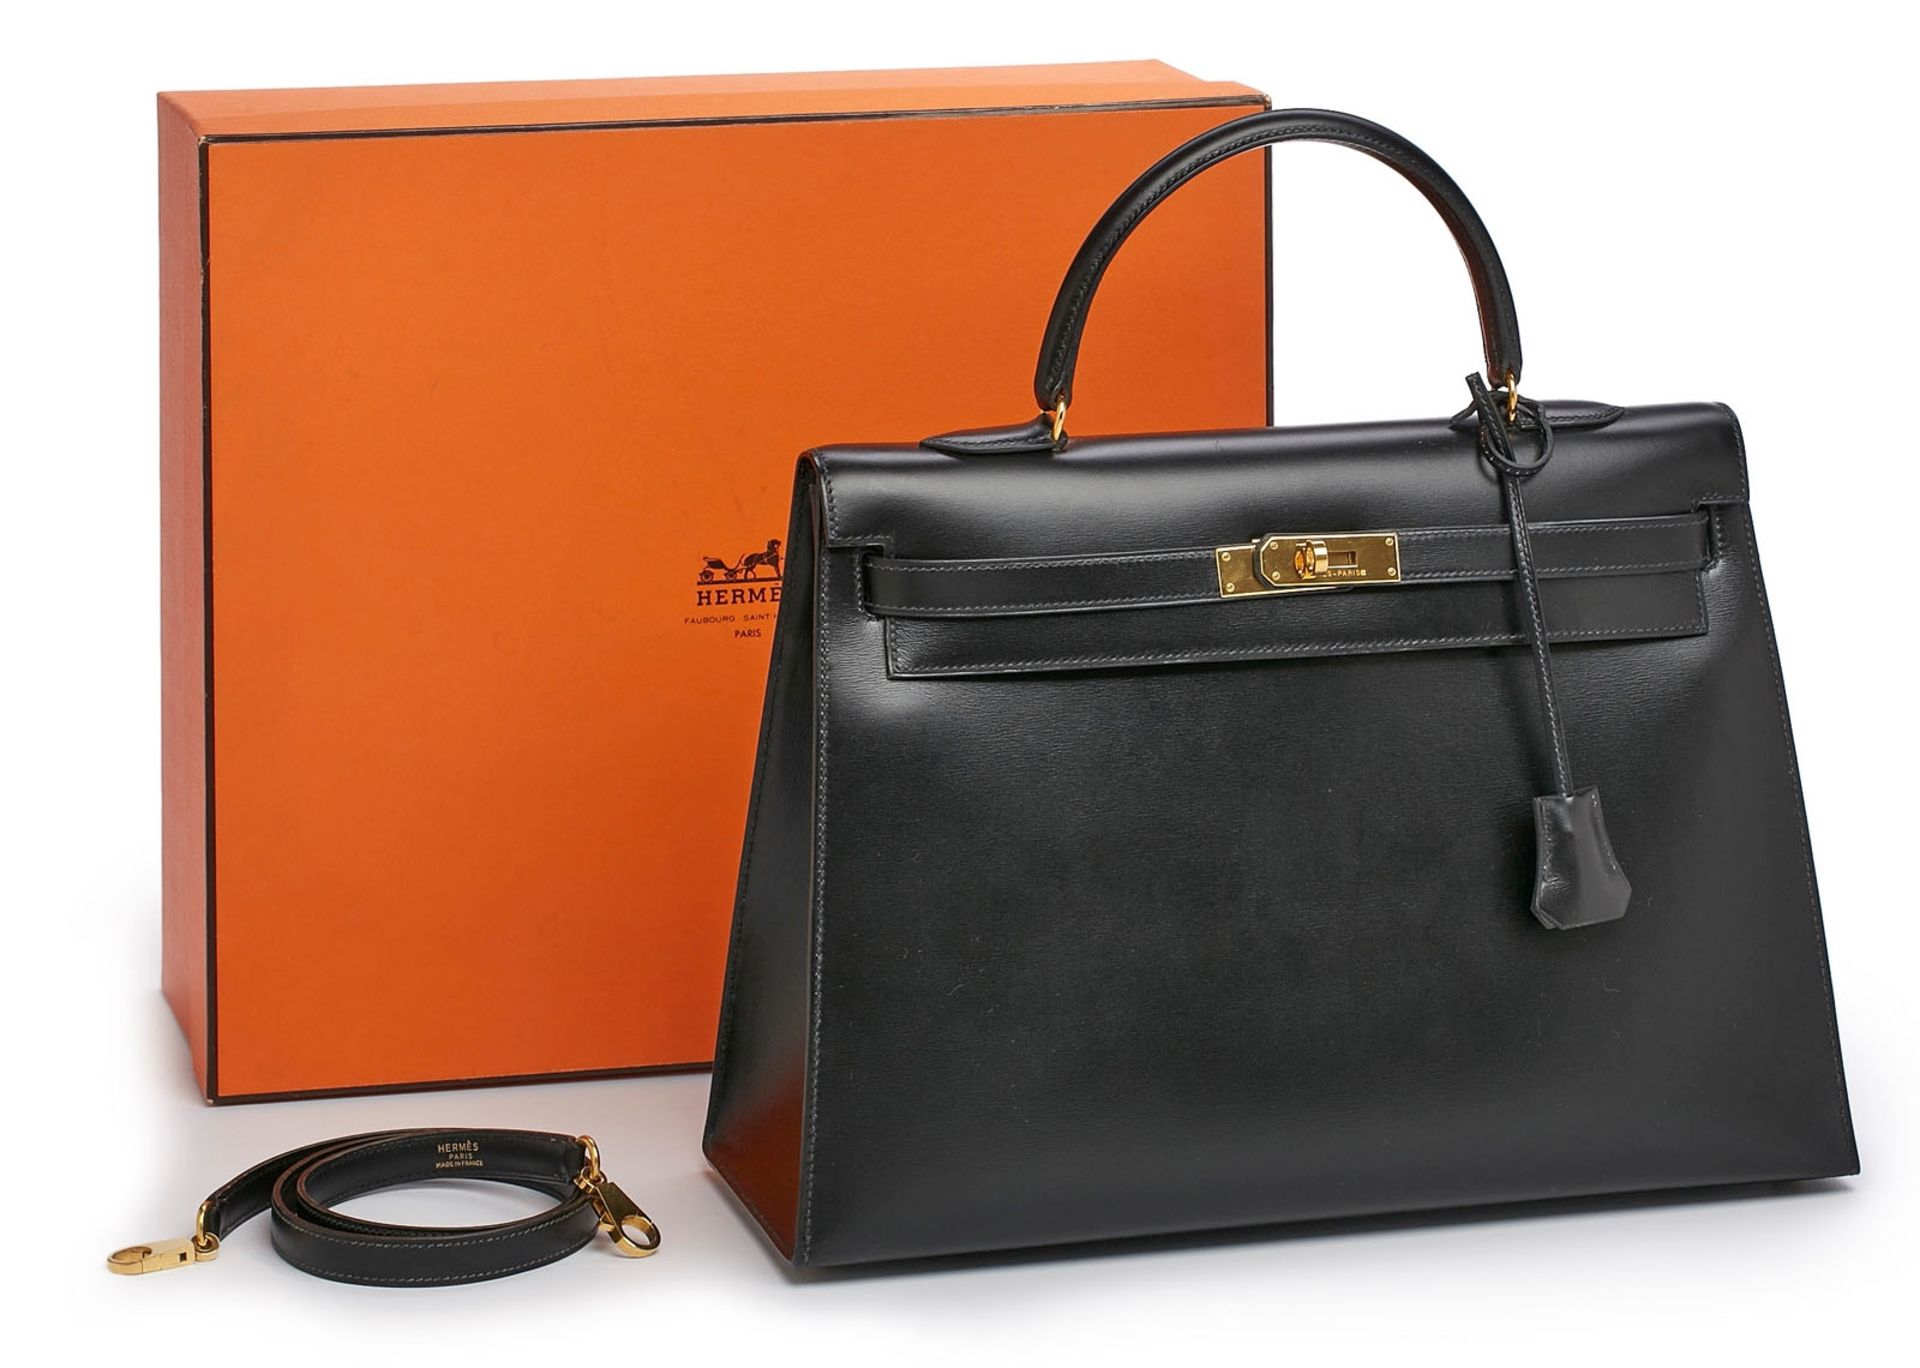 Handtasche "Kelly Bag", Hermès 1992. - Bild 3 aus 7